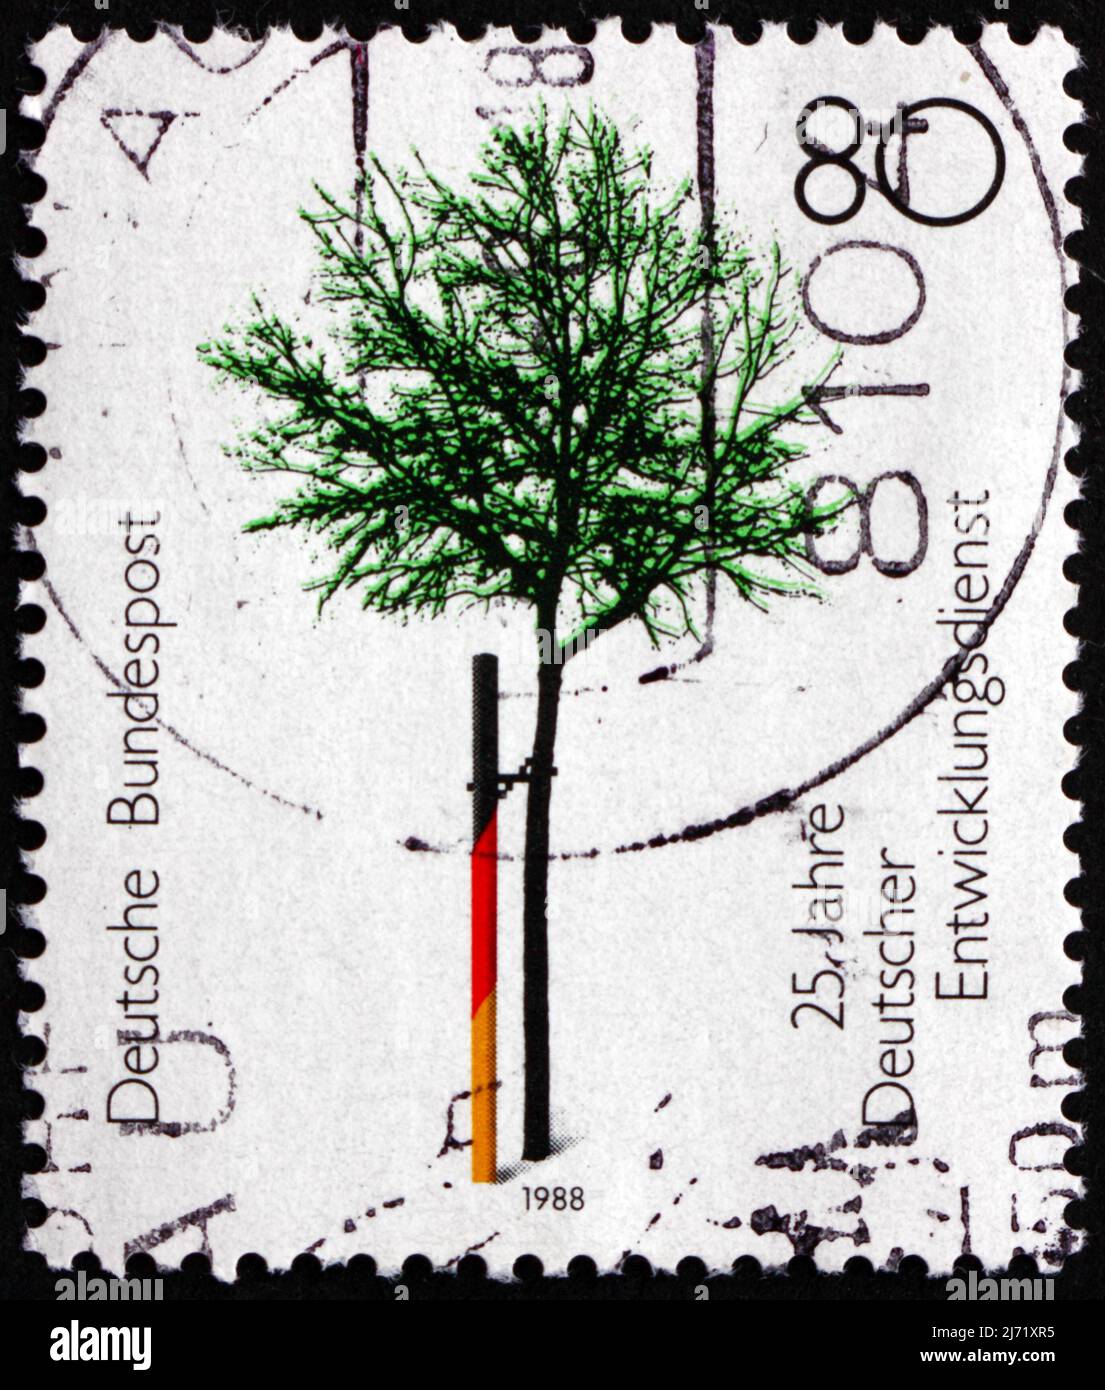 DEUTSCHLAND - UM 1988: Eine in Deutschland gedruckte Briefmarke zeigt Baum, Deutscher Freiwilligendienst, 25.-jähriges Jubiläum, um 1988 Stockfoto